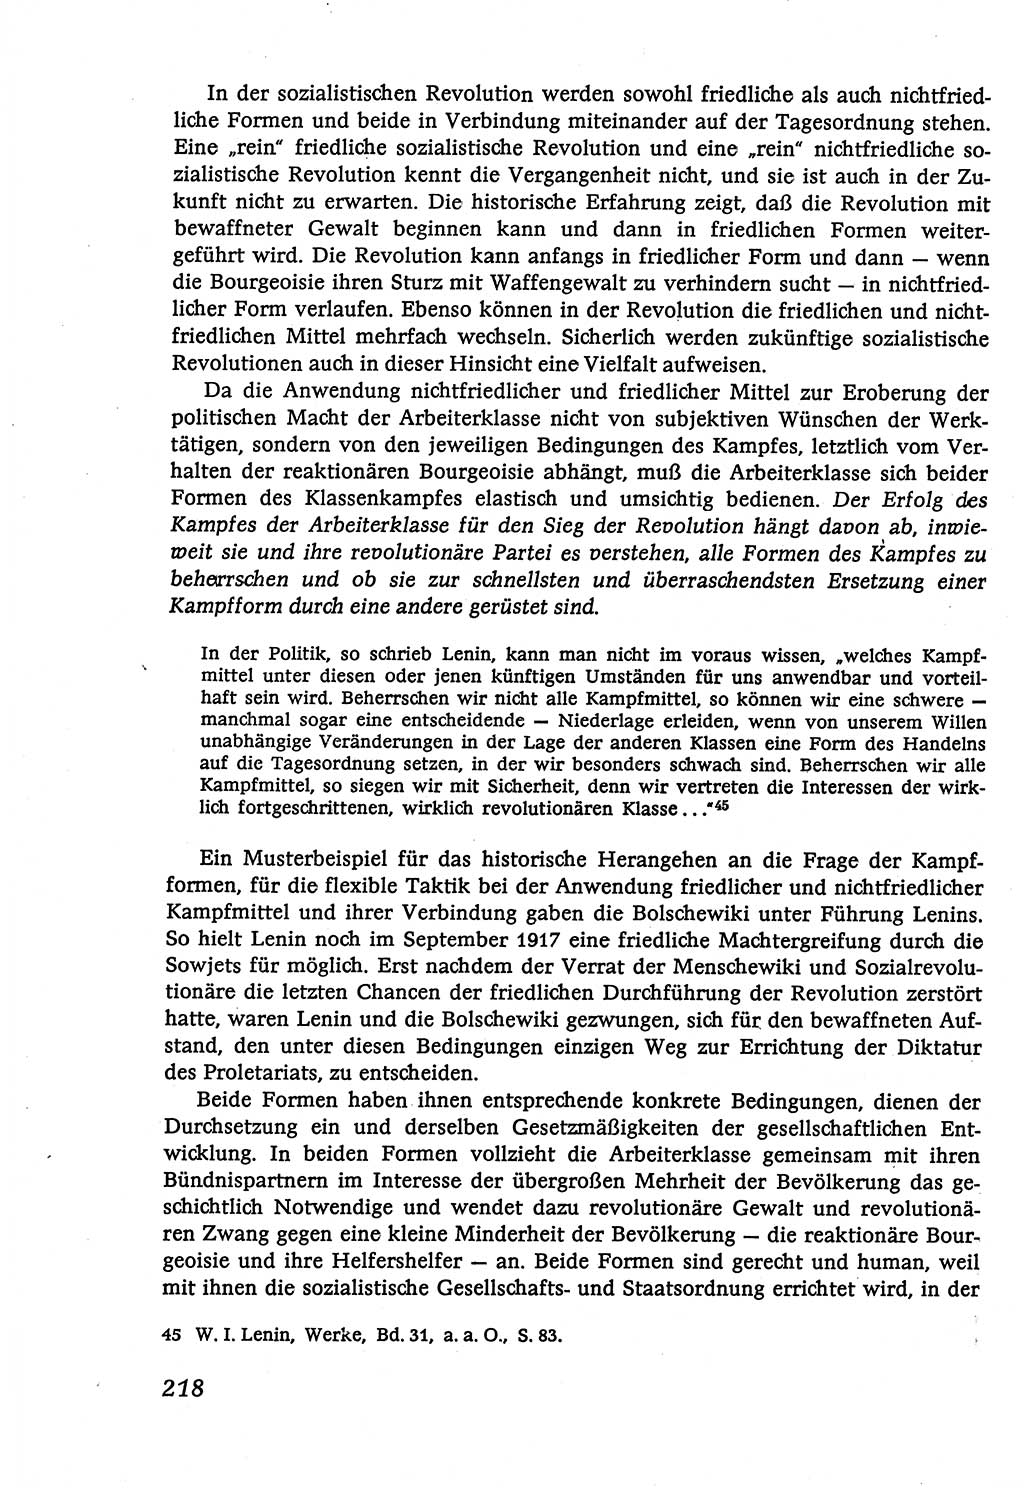 Marxistisch-leninistische (ML) Staats- und Rechtstheorie [Deutsche Demokratische Republik (DDR)], Lehrbuch 1980, Seite 218 (ML St.-R.-Th. DDR Lb. 1980, S. 218)